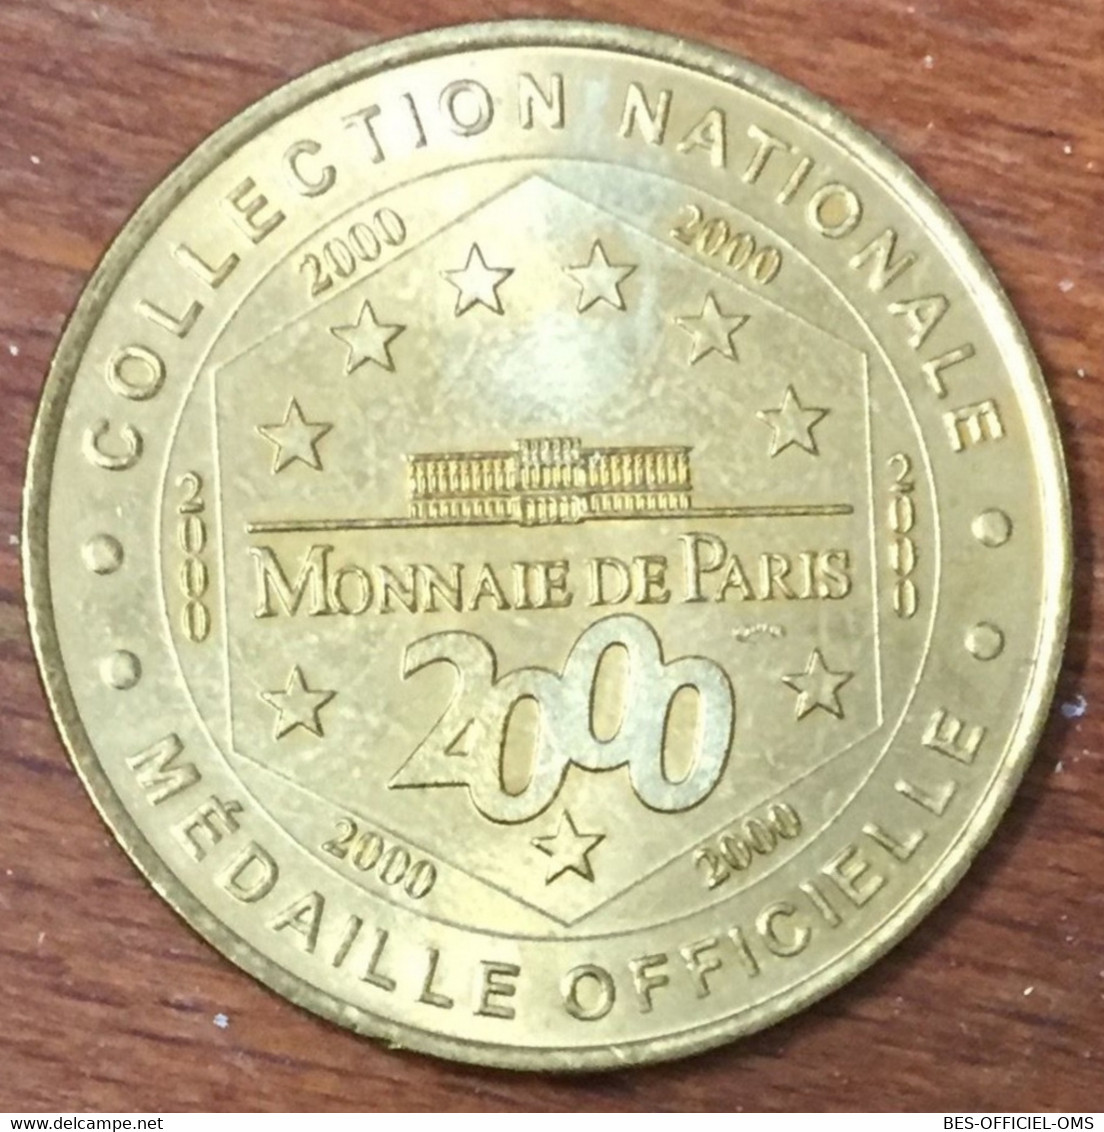 37 FORTERESSE MÉDIÉVALE DE LOCHES LOGIS ROYAL MDP 2000 MEDAILLE MONNAIE DE PARIS JETON TOURISTIQUE MEDALS COINS TOKENS - 2000